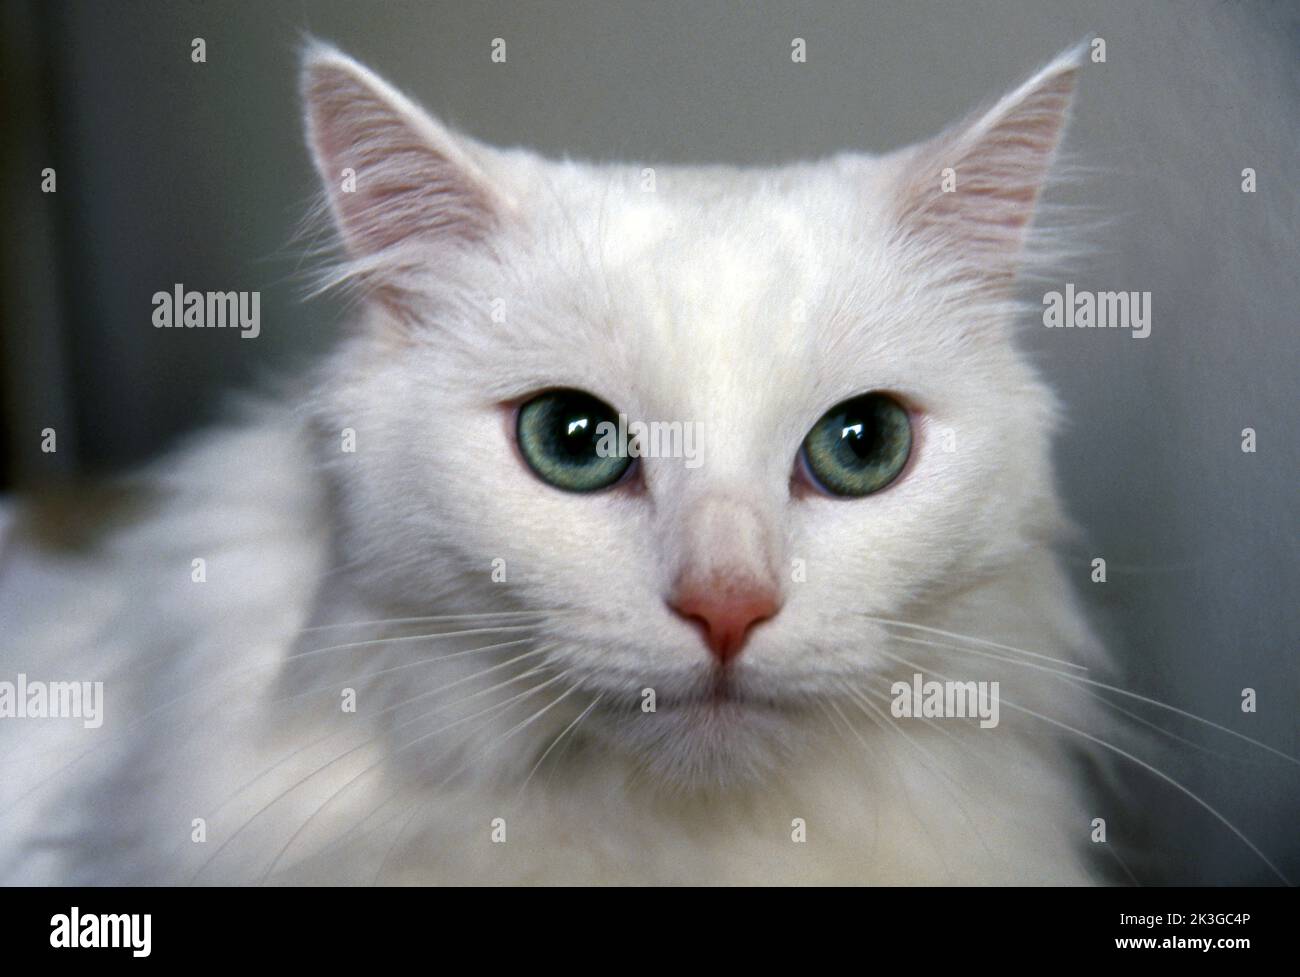 Retrato de un gato blanco de pelo largo con ojos verdes. Foto de stock